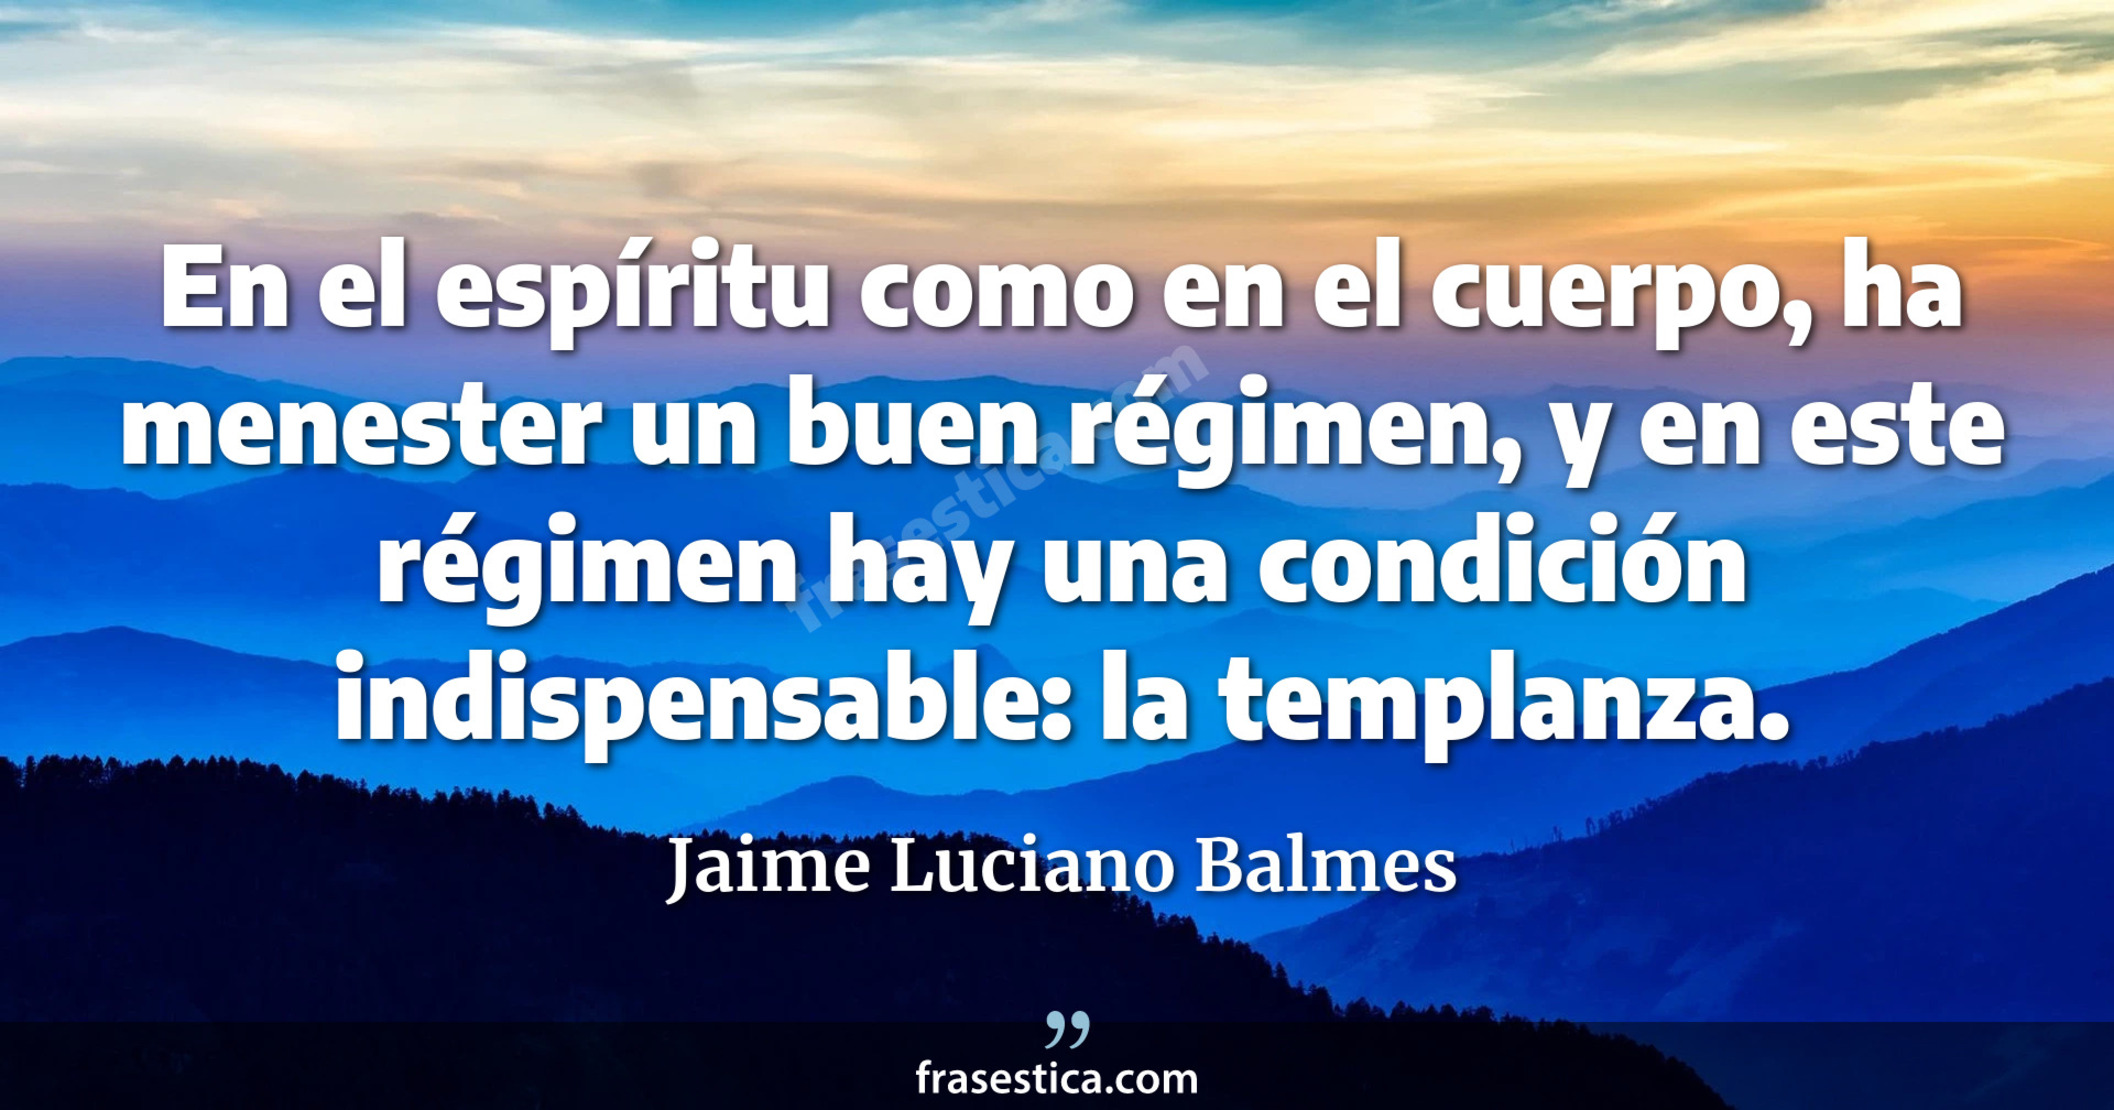 En el espíritu como en el cuerpo, ha menester un buen régimen, y en este régimen hay una condición indispensable: la templanza. - Jaime Luciano Balmes